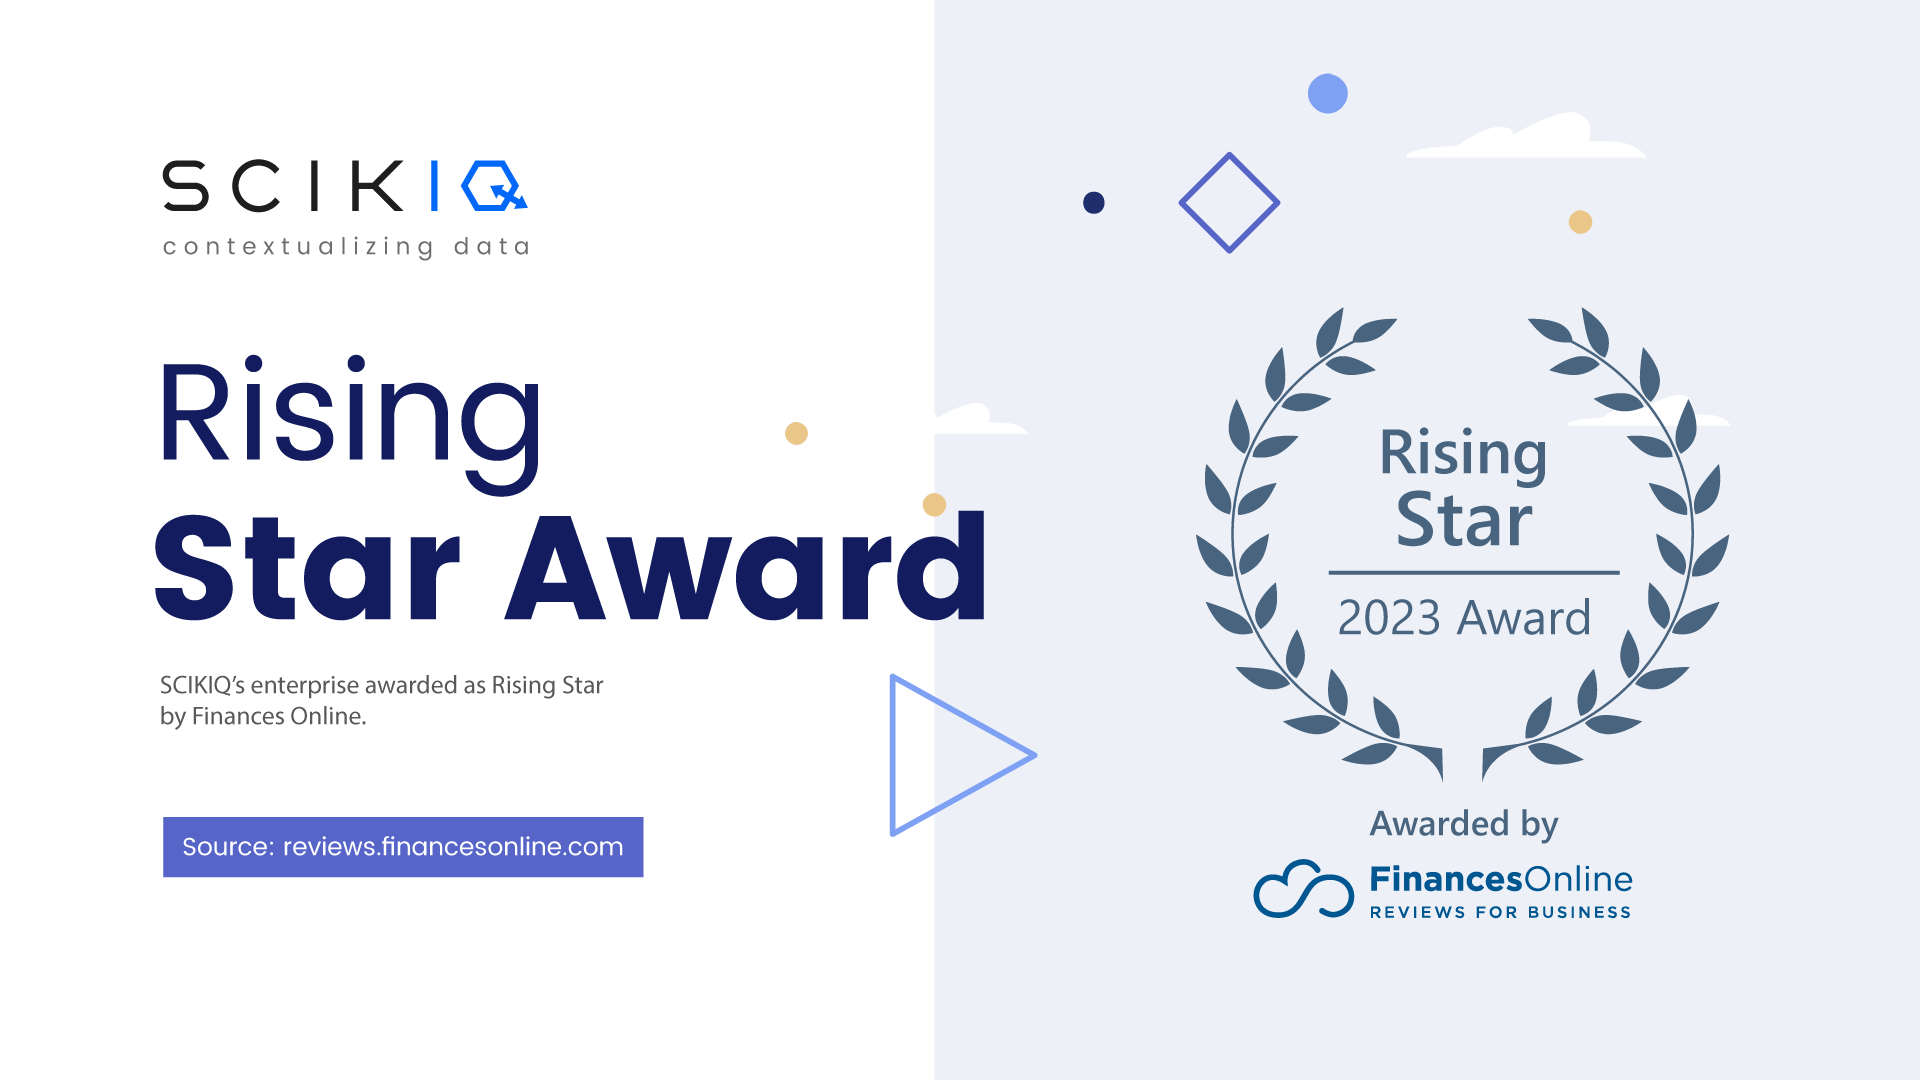 SCIKIQ Receives Finances Online's Rising Star Award for Data Management Solutions